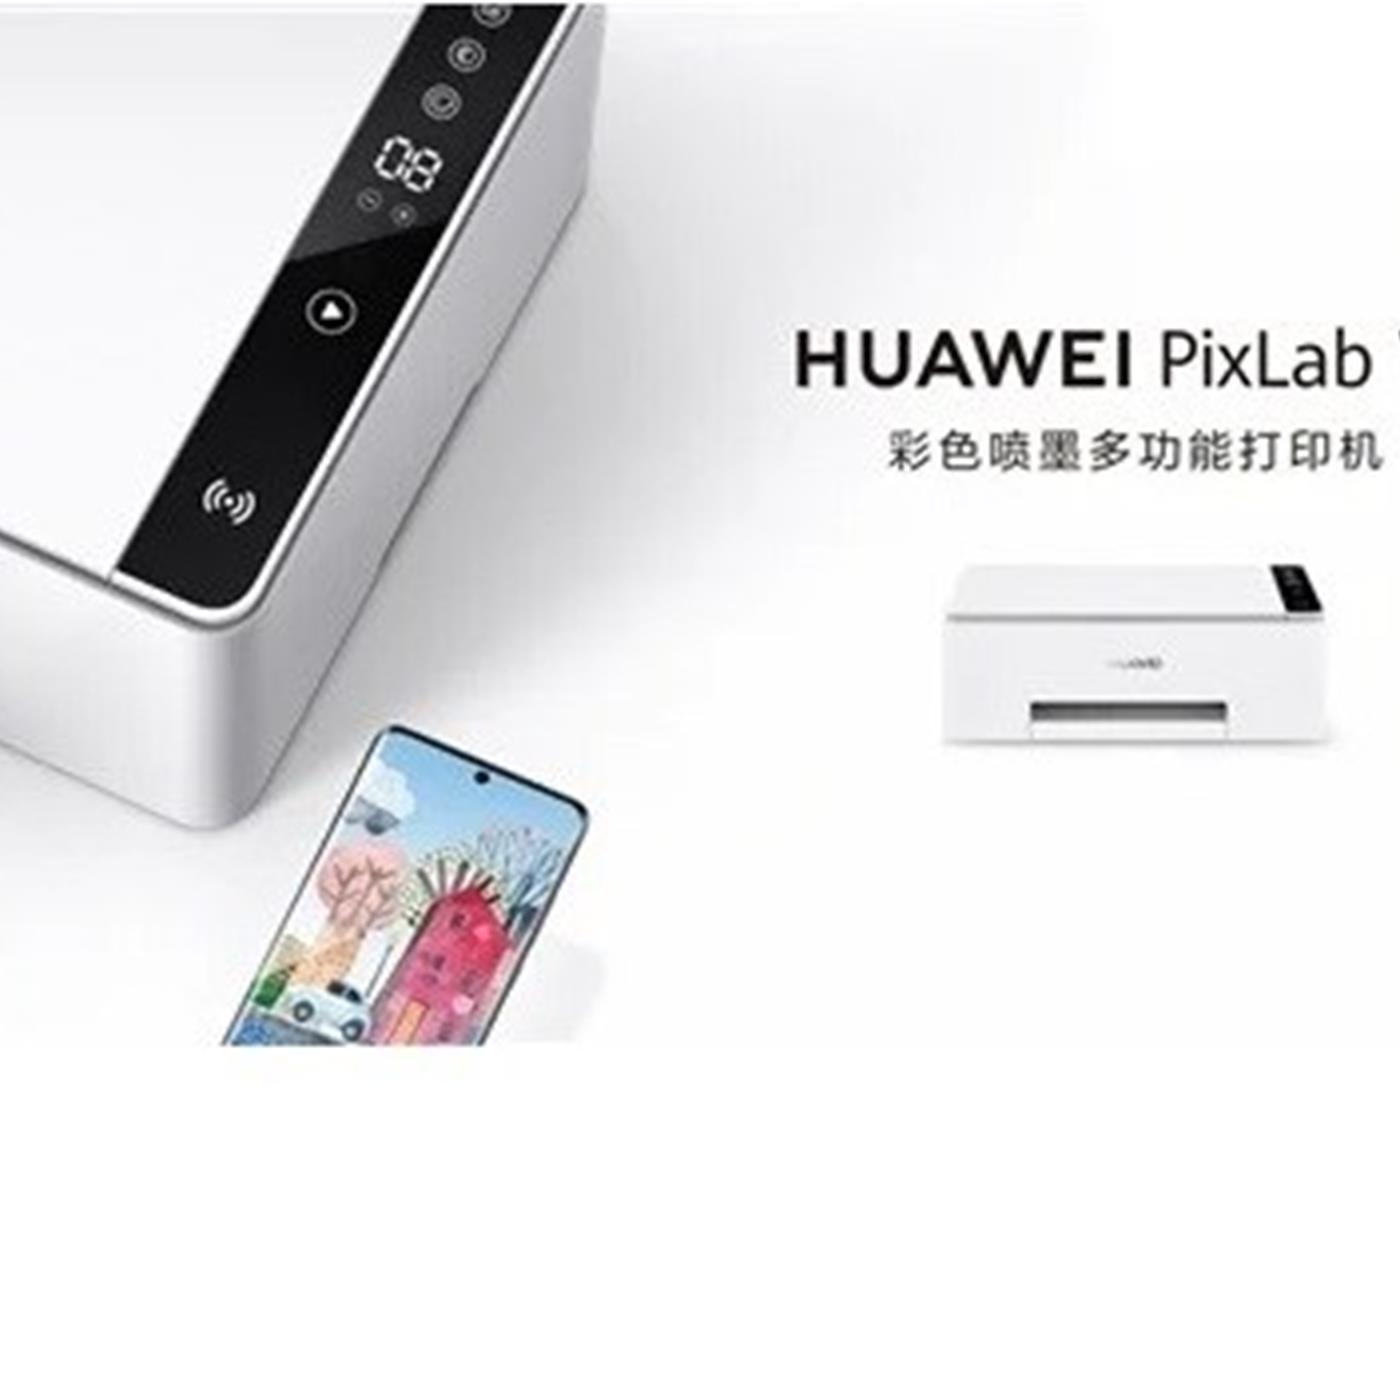 Huawei pixlab купить. Принтер Хуавей. Huawei Pixlab. МФУ Huawei Pixlab x1. Принтер Huawei 1500.